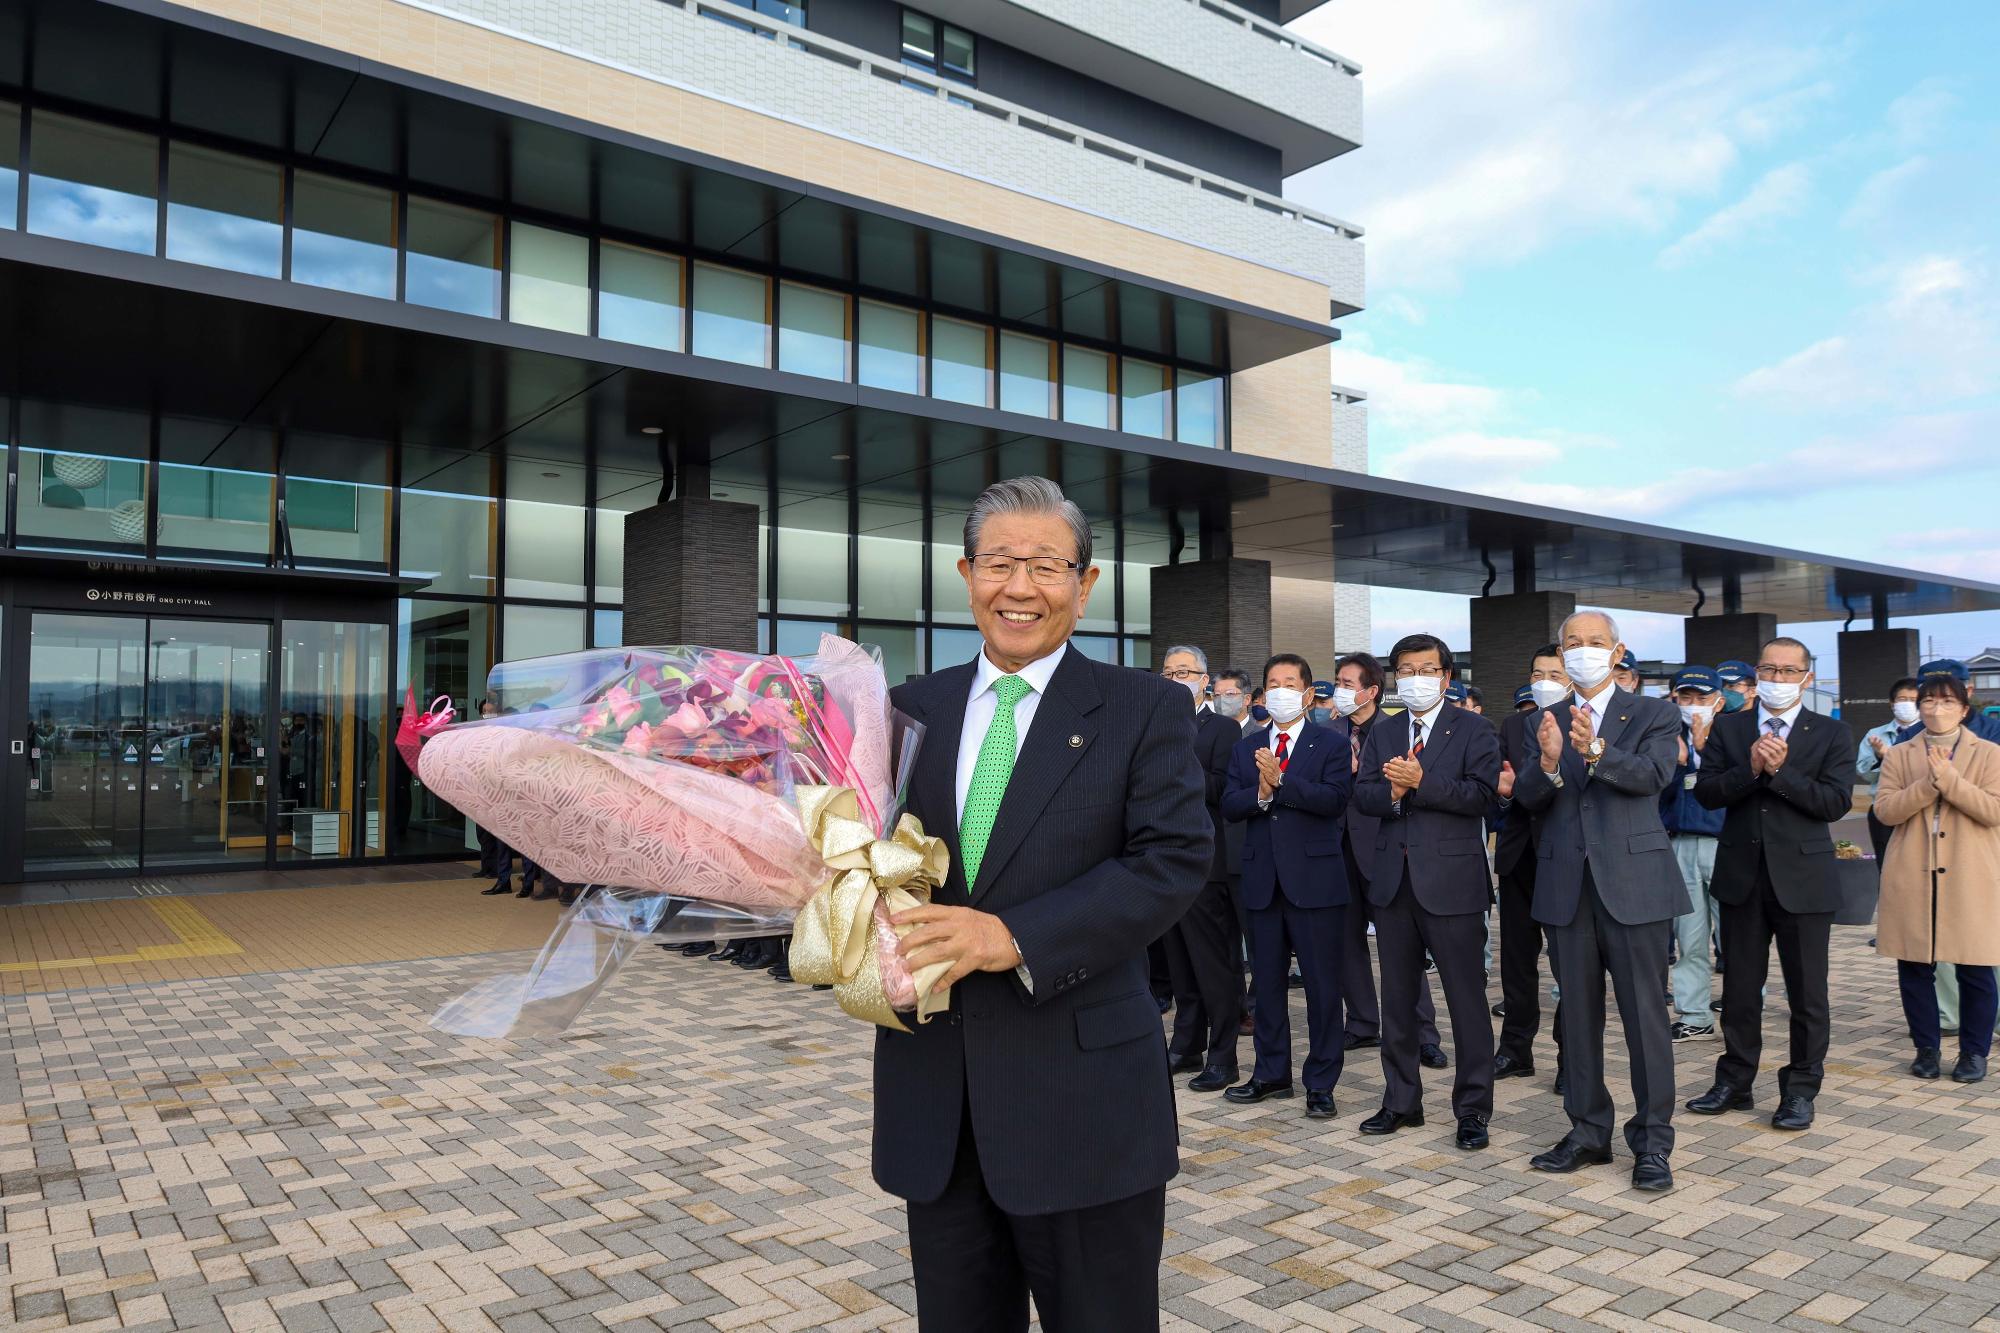 7期目の市長就任の初登庁に際し庁舎正面玄関で花束を掲げる市長の写真